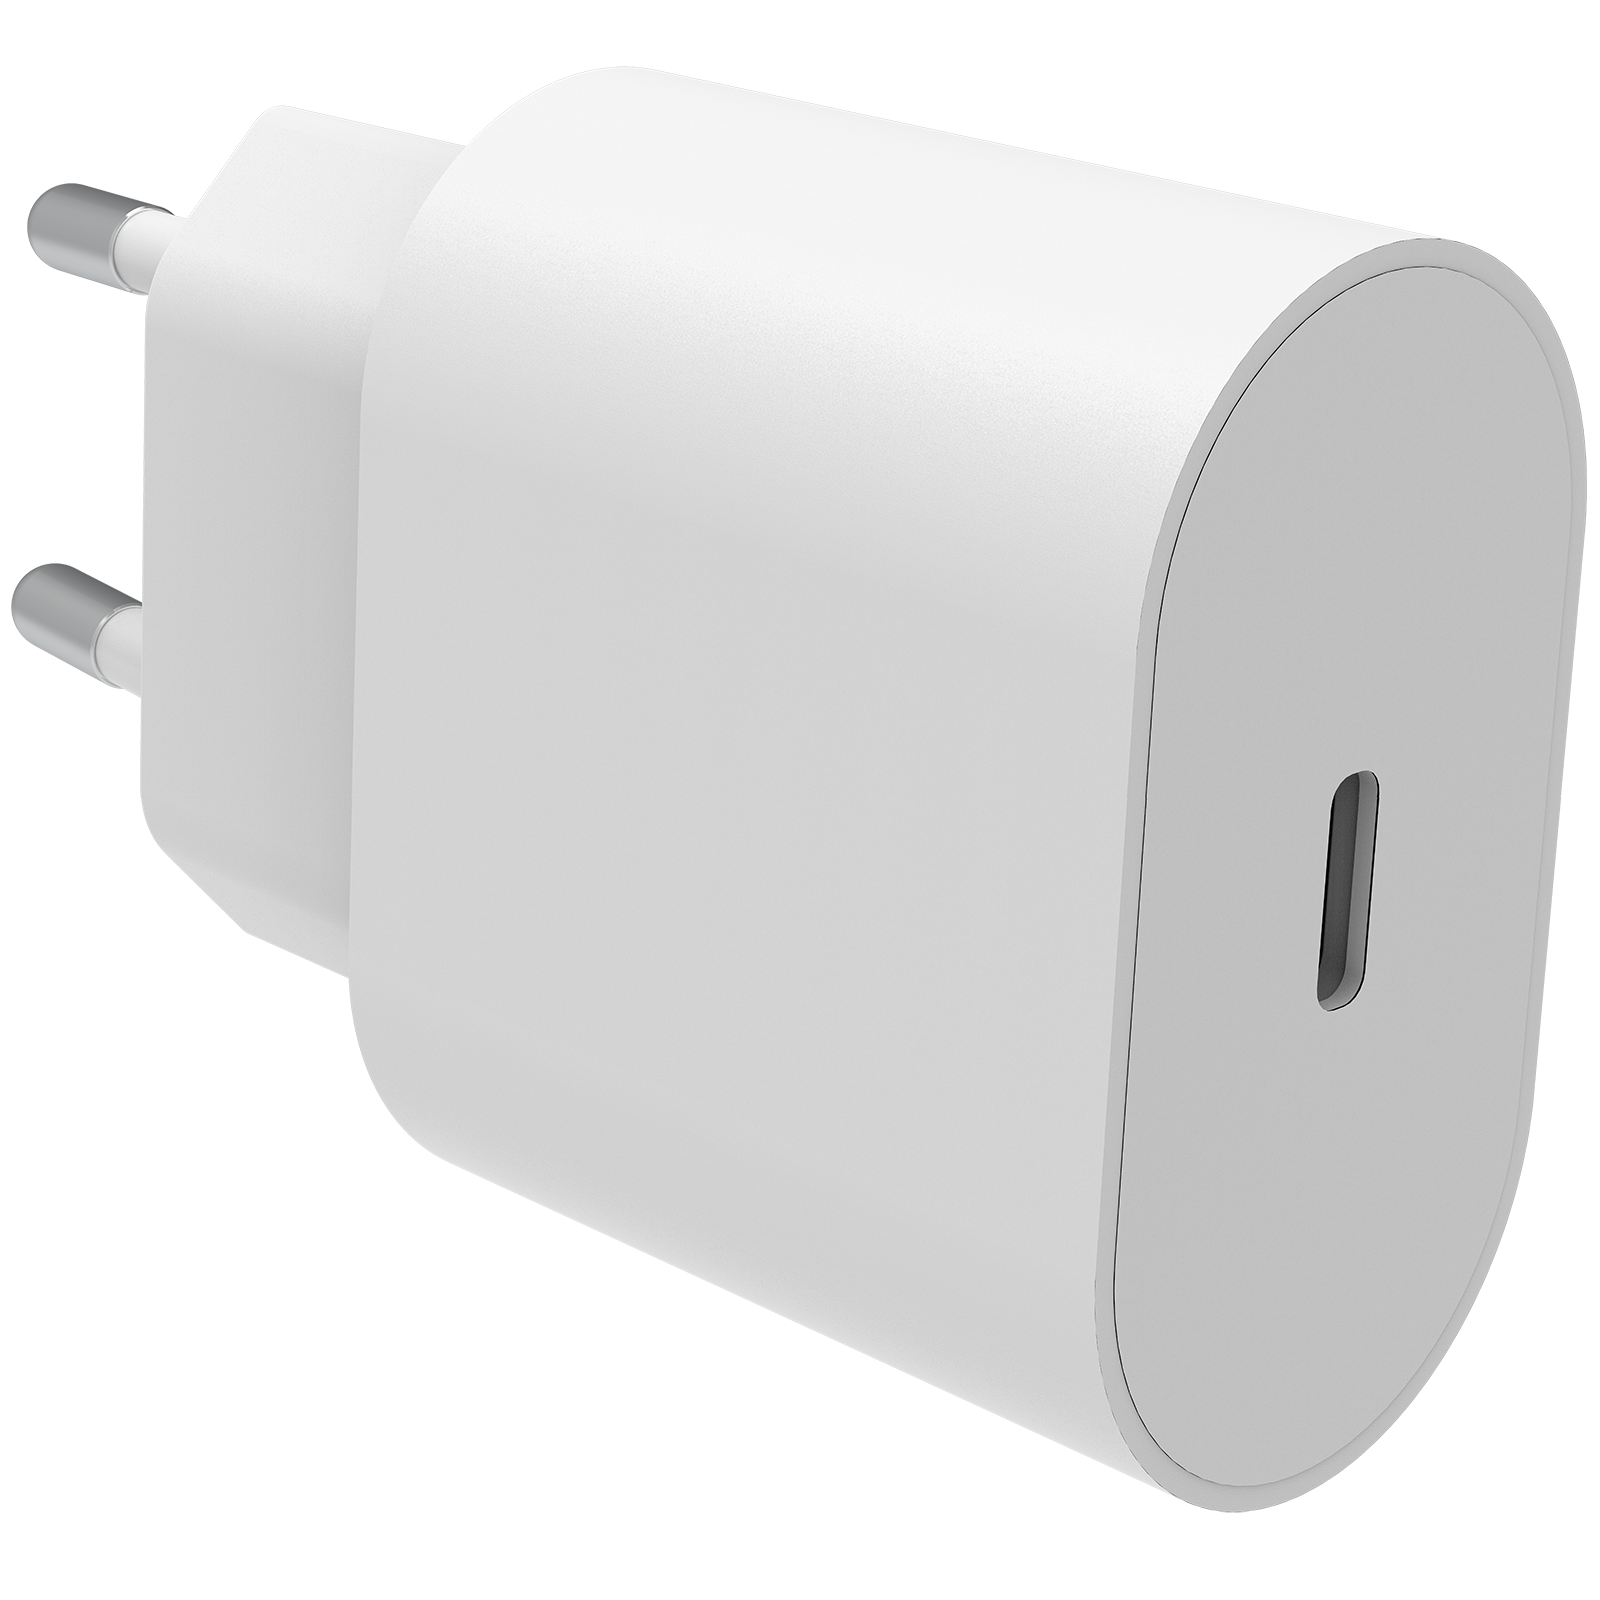 Chargeur complet pour iPhone SE (2020) - Câble de 2m et chargeur mural -  Smartline